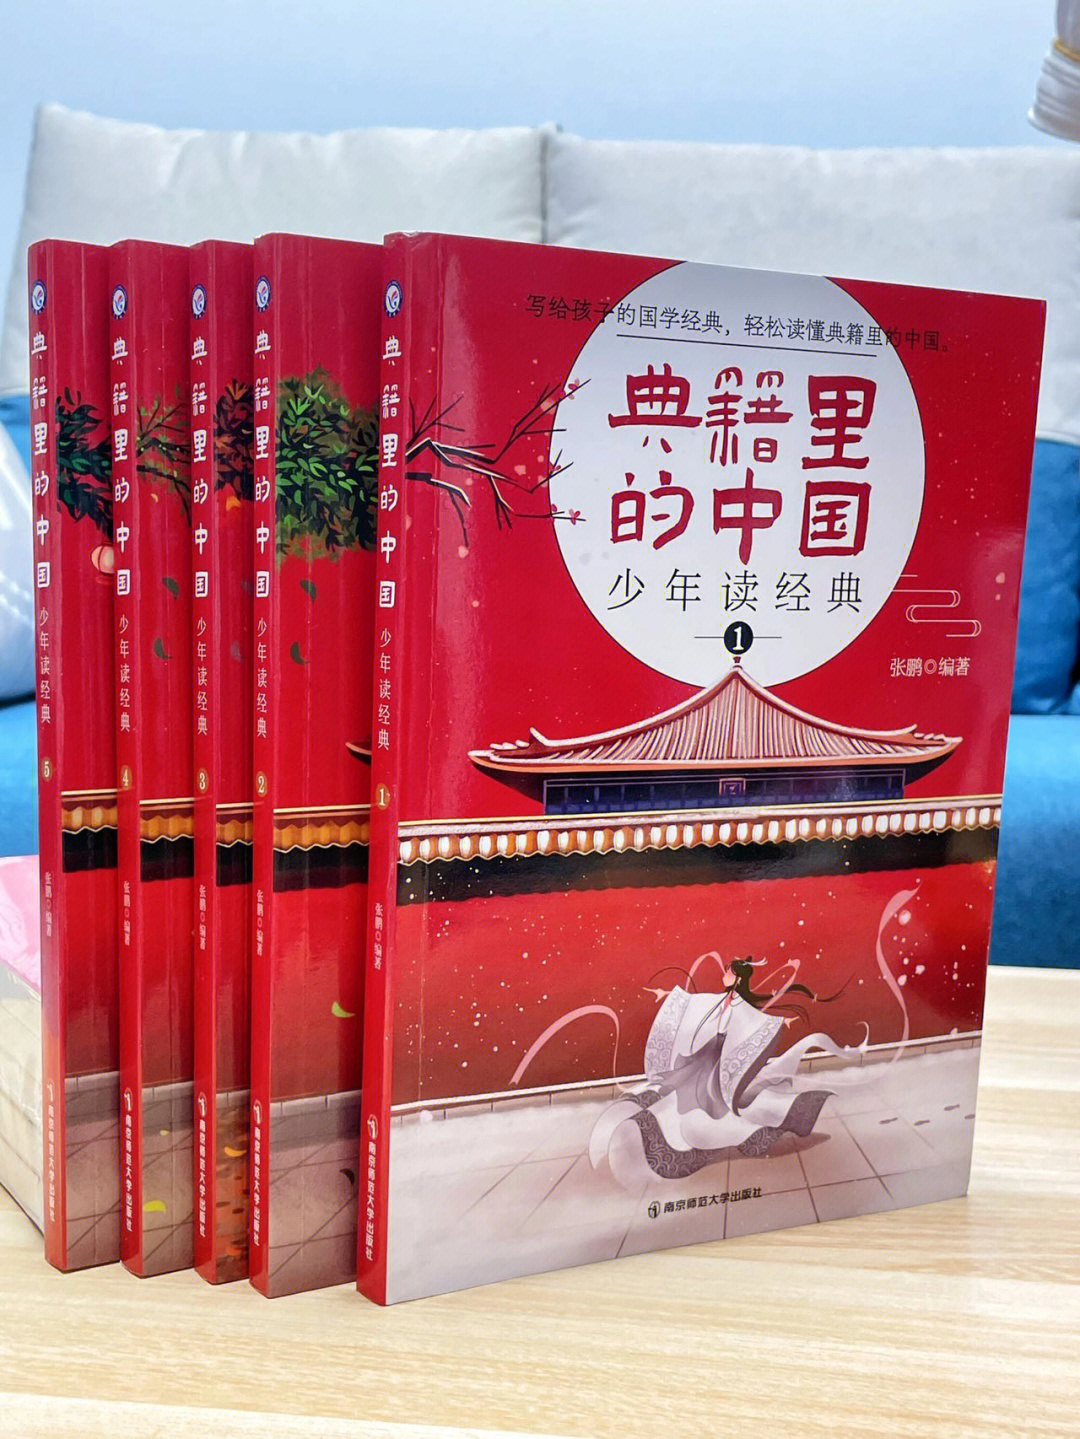 的中国·少年学经典》它包含了60部典籍,其中有《天工开物》,《史记》